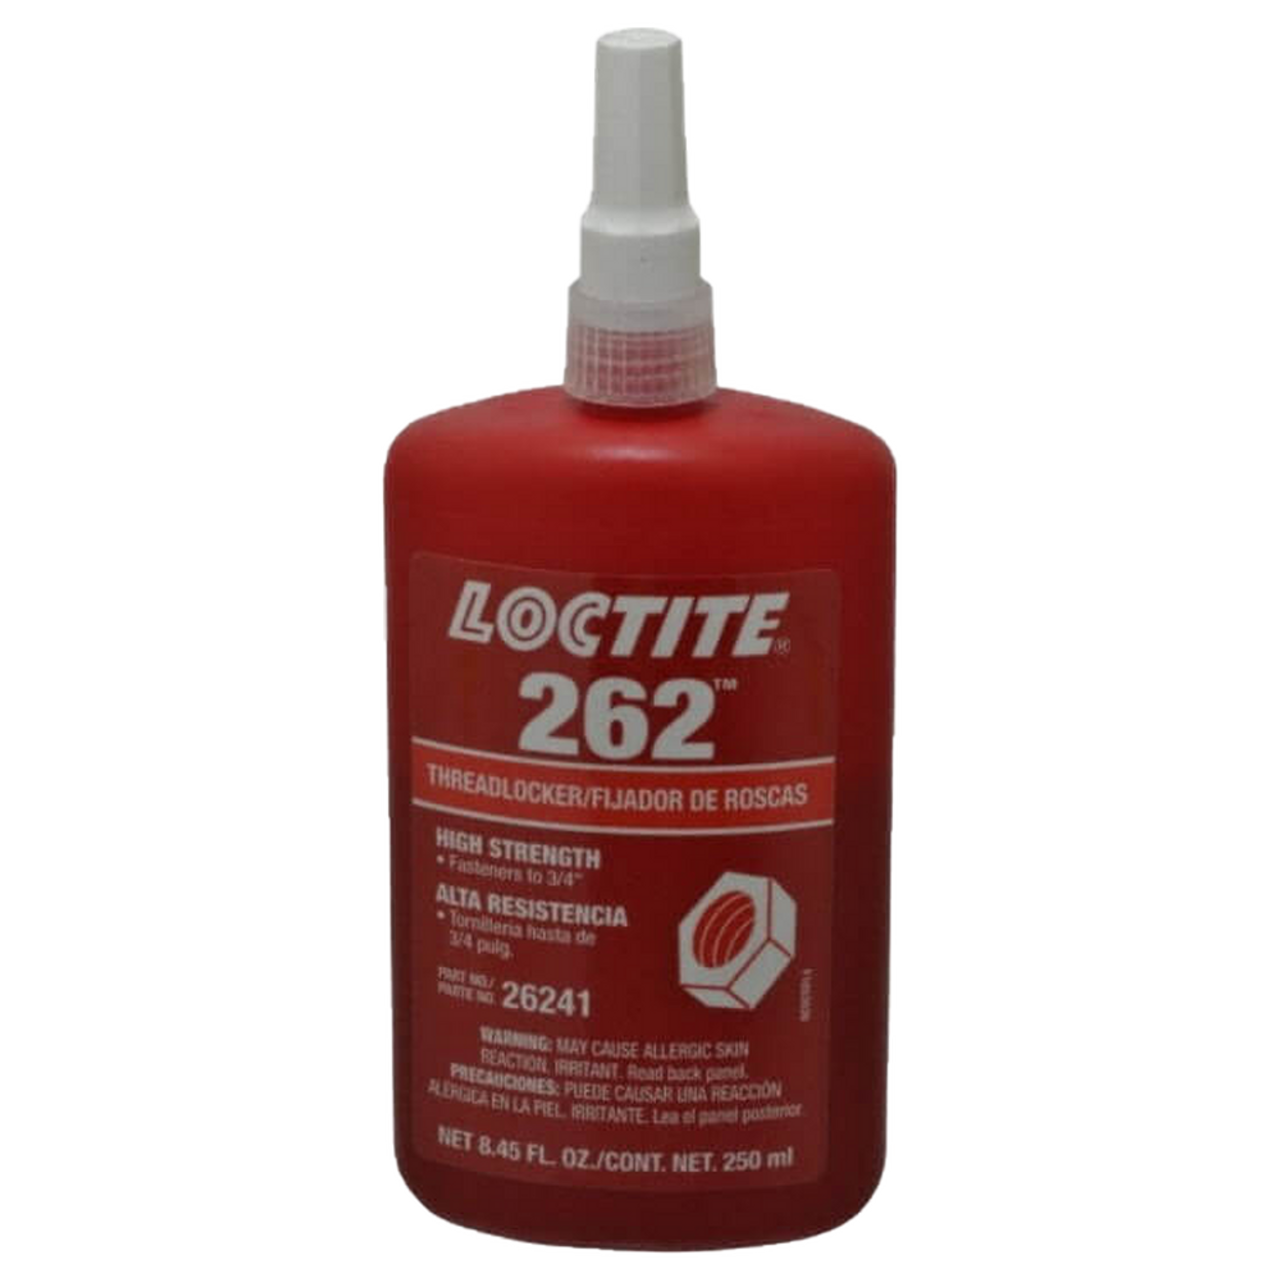 Loctite 243 Medium Threadlock 50ml - Gt2i